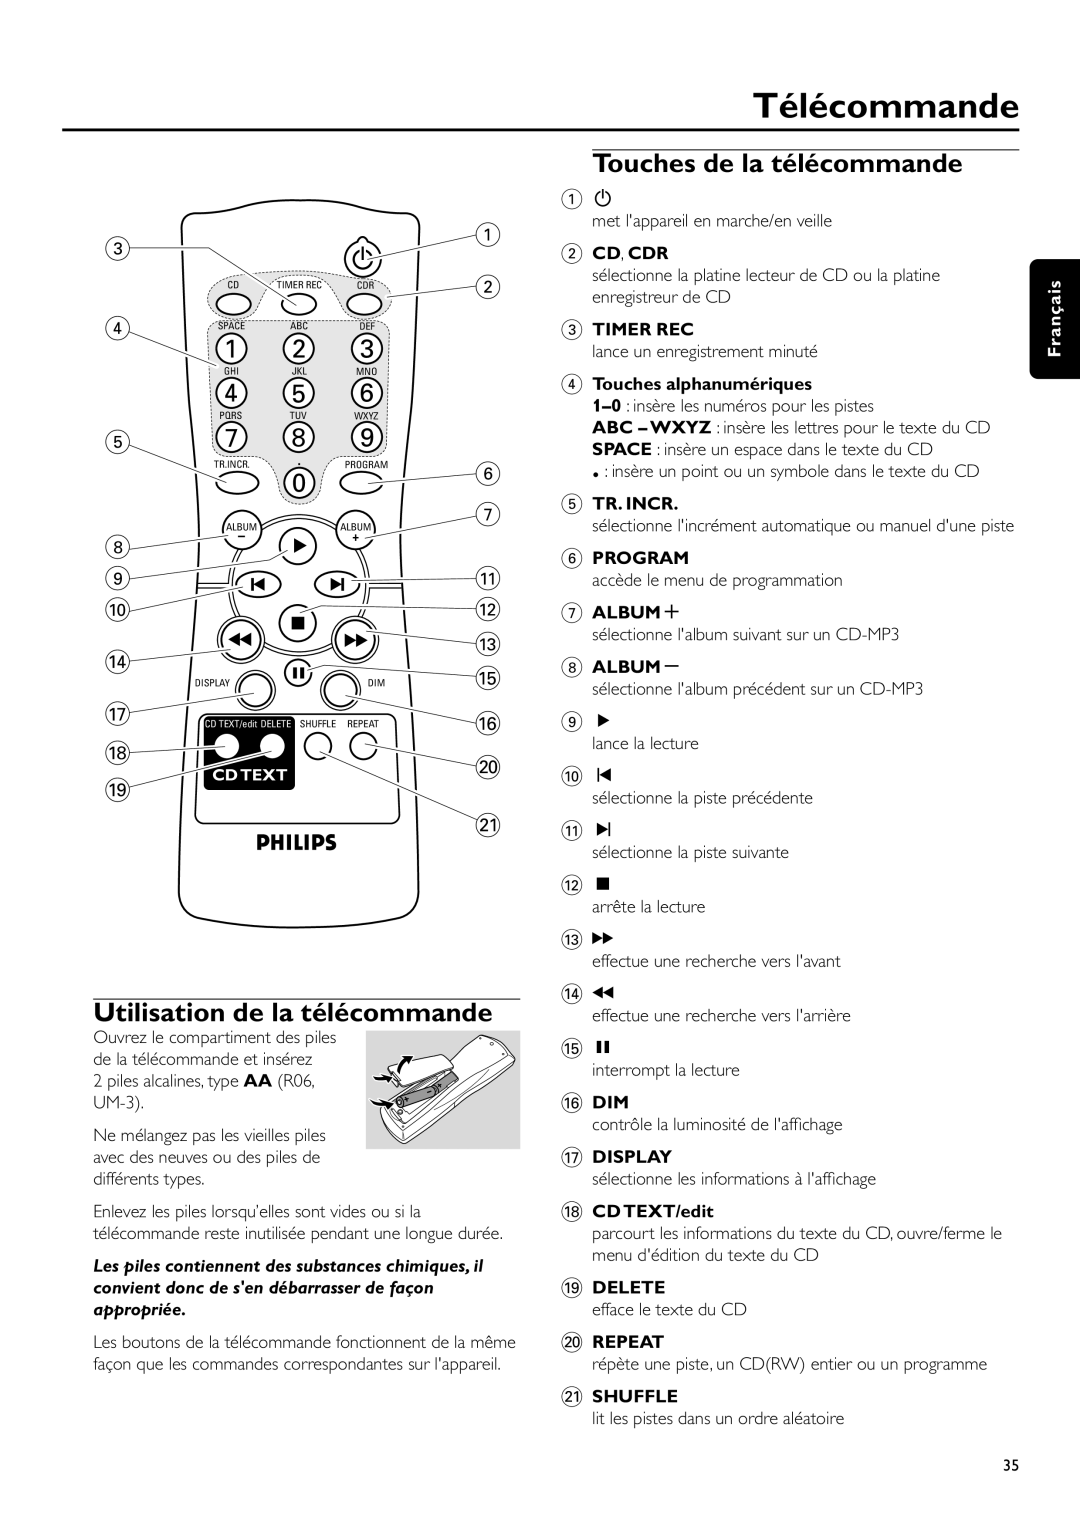 Philips CDR-795 Télécommande, Touches de la télécommande, Utilisation de la télécommande, 2 CD, CDR, appropriée, Timer Rec 